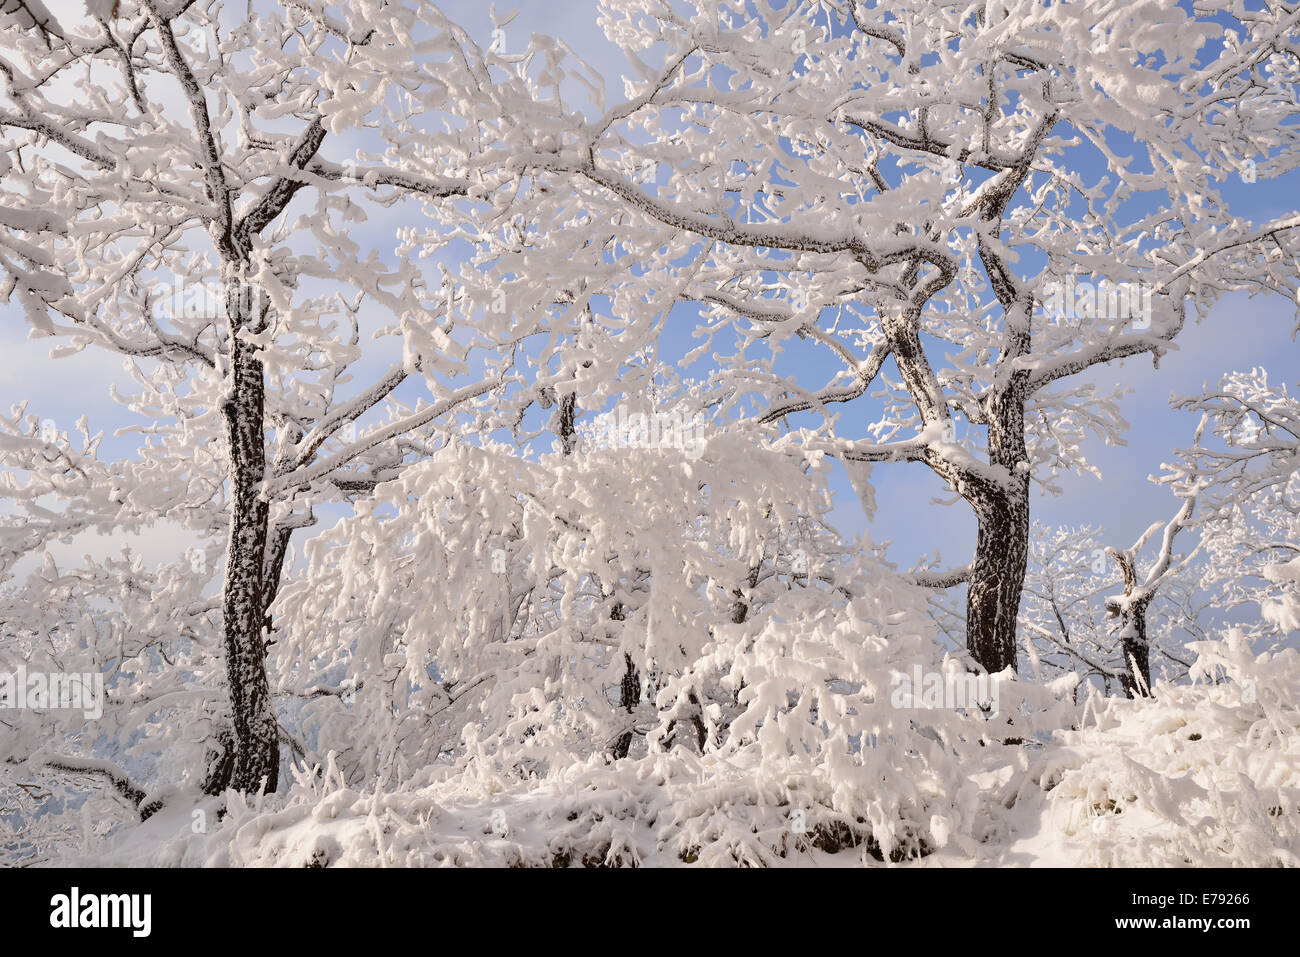 Une forêt en hiver, les arbres couverts de neige et de givre, Roßtrappe falaise, Thale, Saxe-Anhalt, Allemagne Banque D'Images